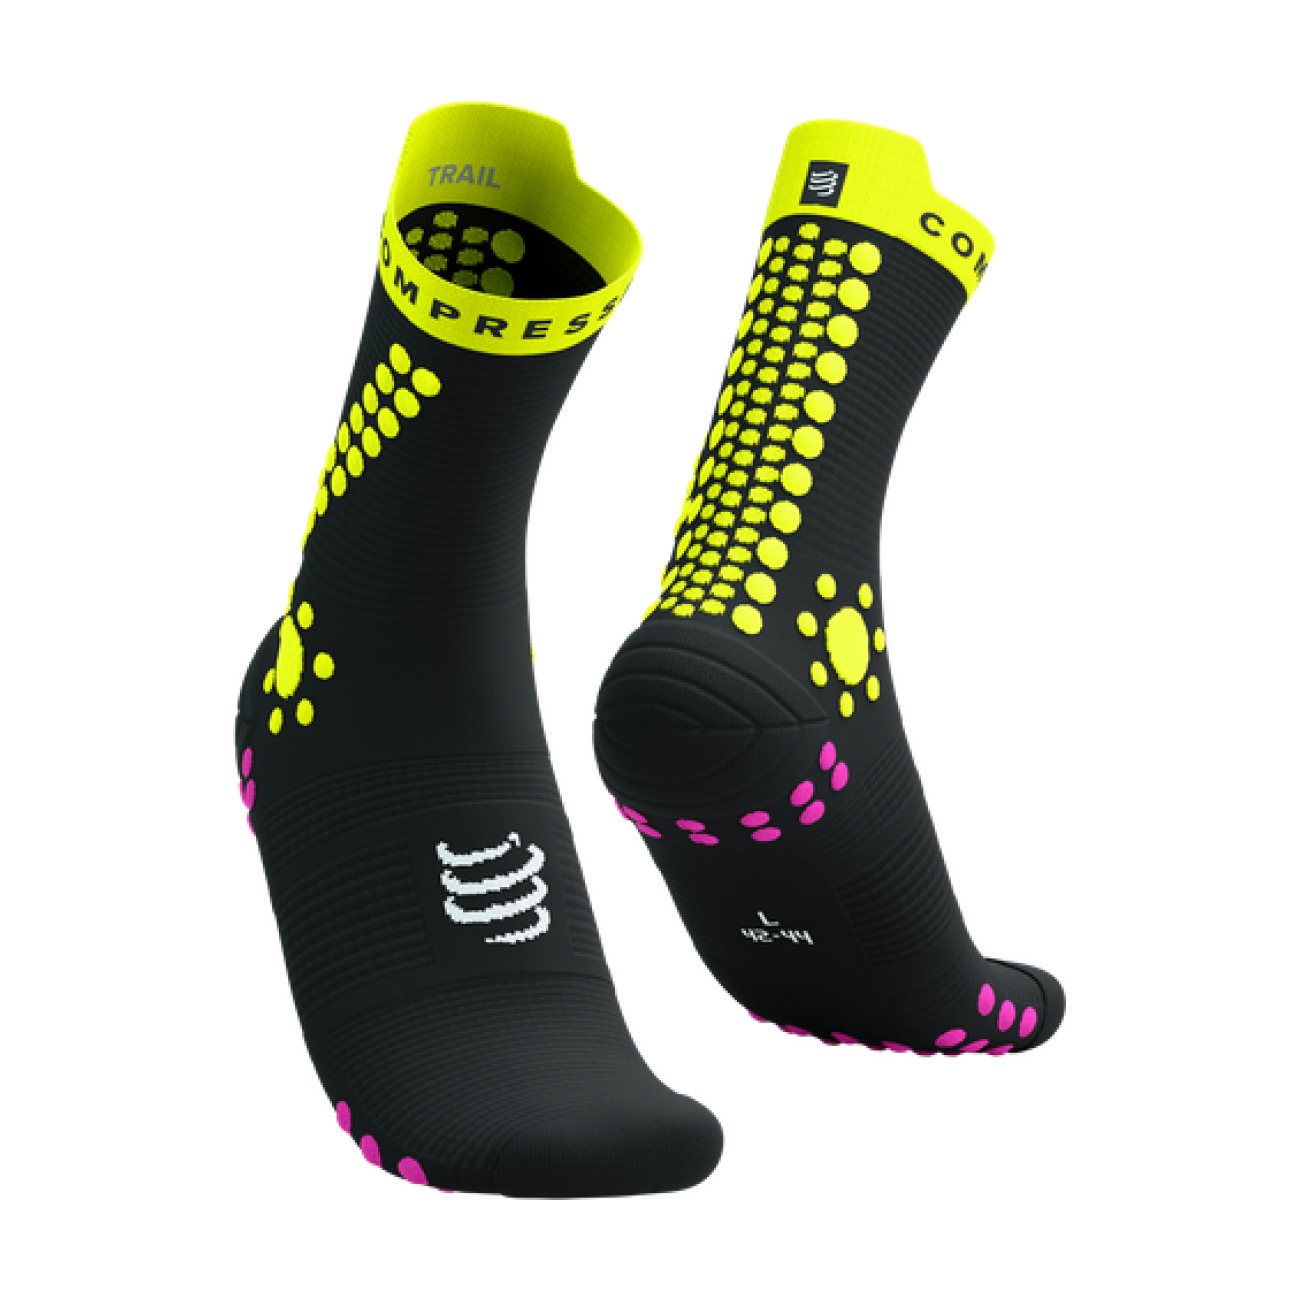 COMPRESSPORT Cyklistické ponožky klasické - PRO RACING V4.0 TRAIL - žlutá/černá 42-44